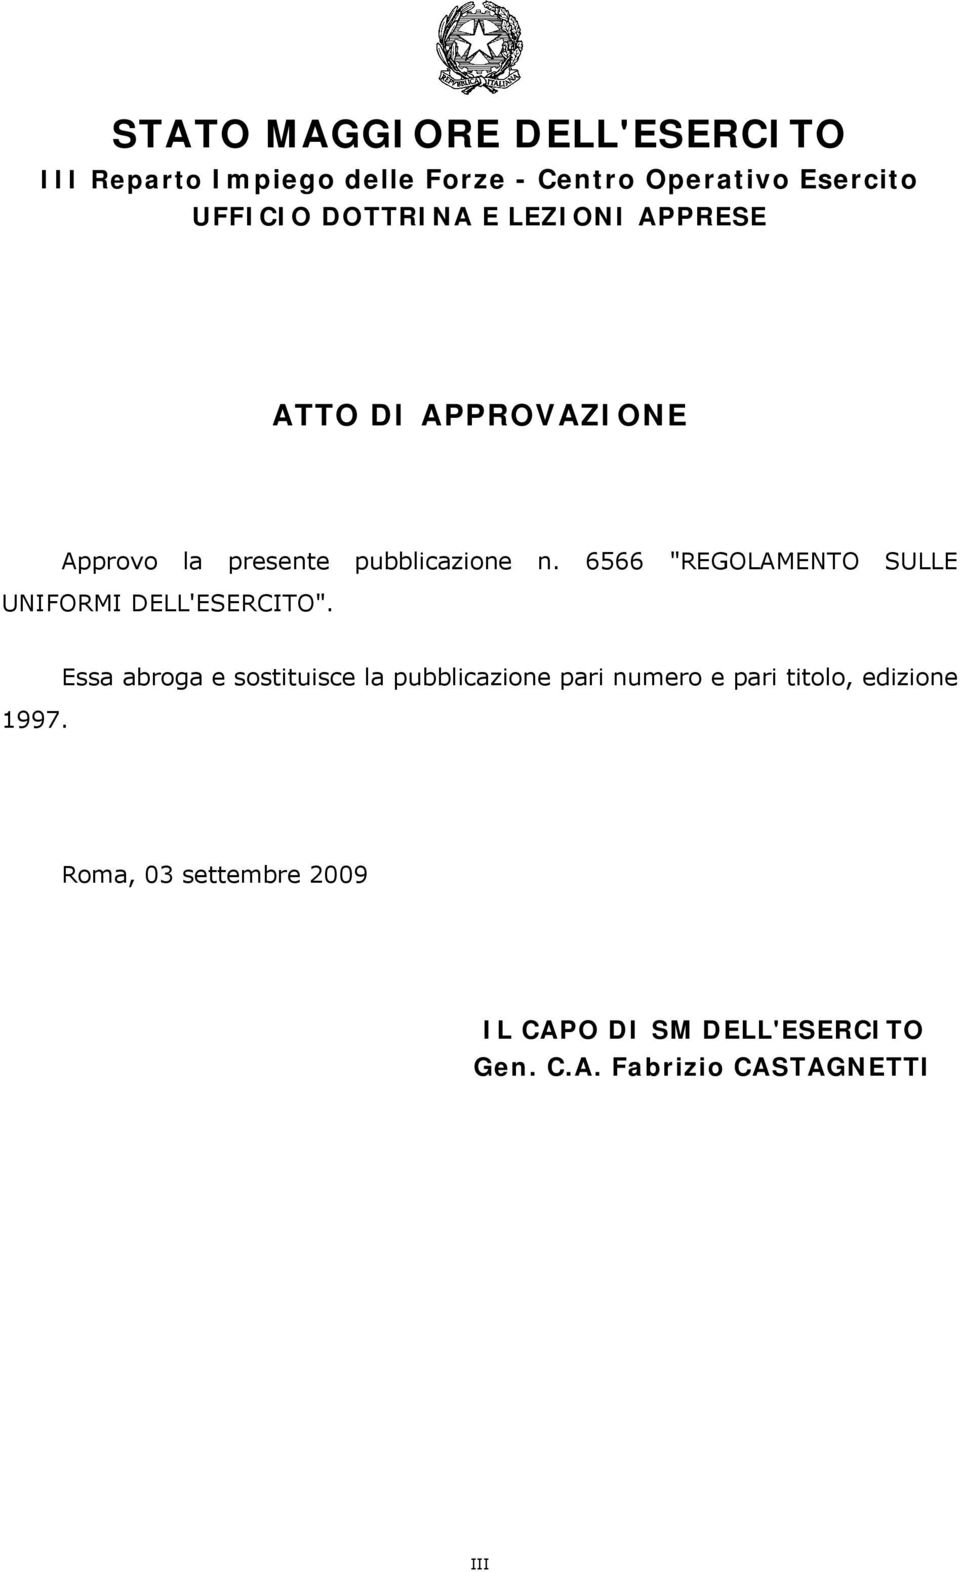 6566 "REGOLAMENTO SULLE UNIFORMI DELL'ESERCITO". 1997.